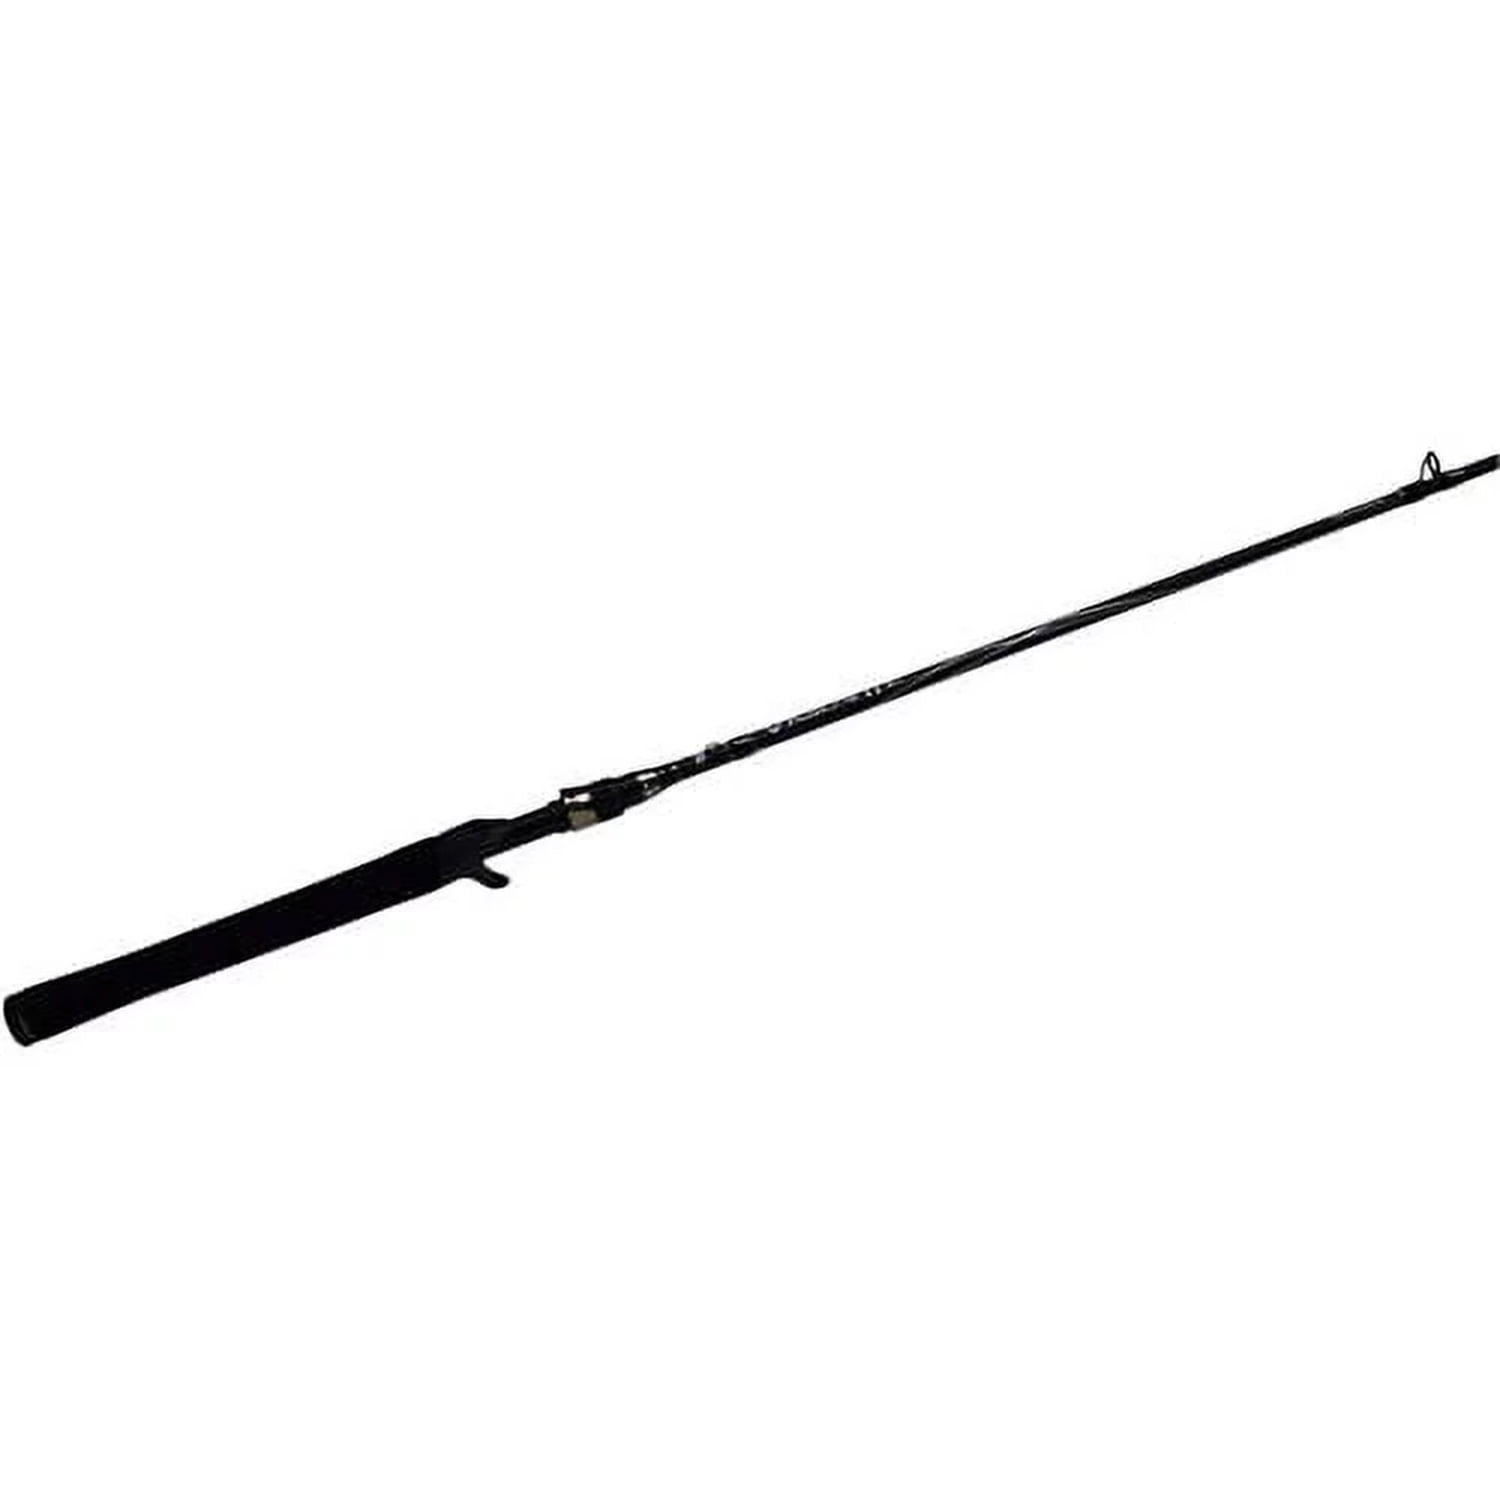 Abu Garcia 7' Vigilante Casting Fishing Rod, 1 Piece Rod 